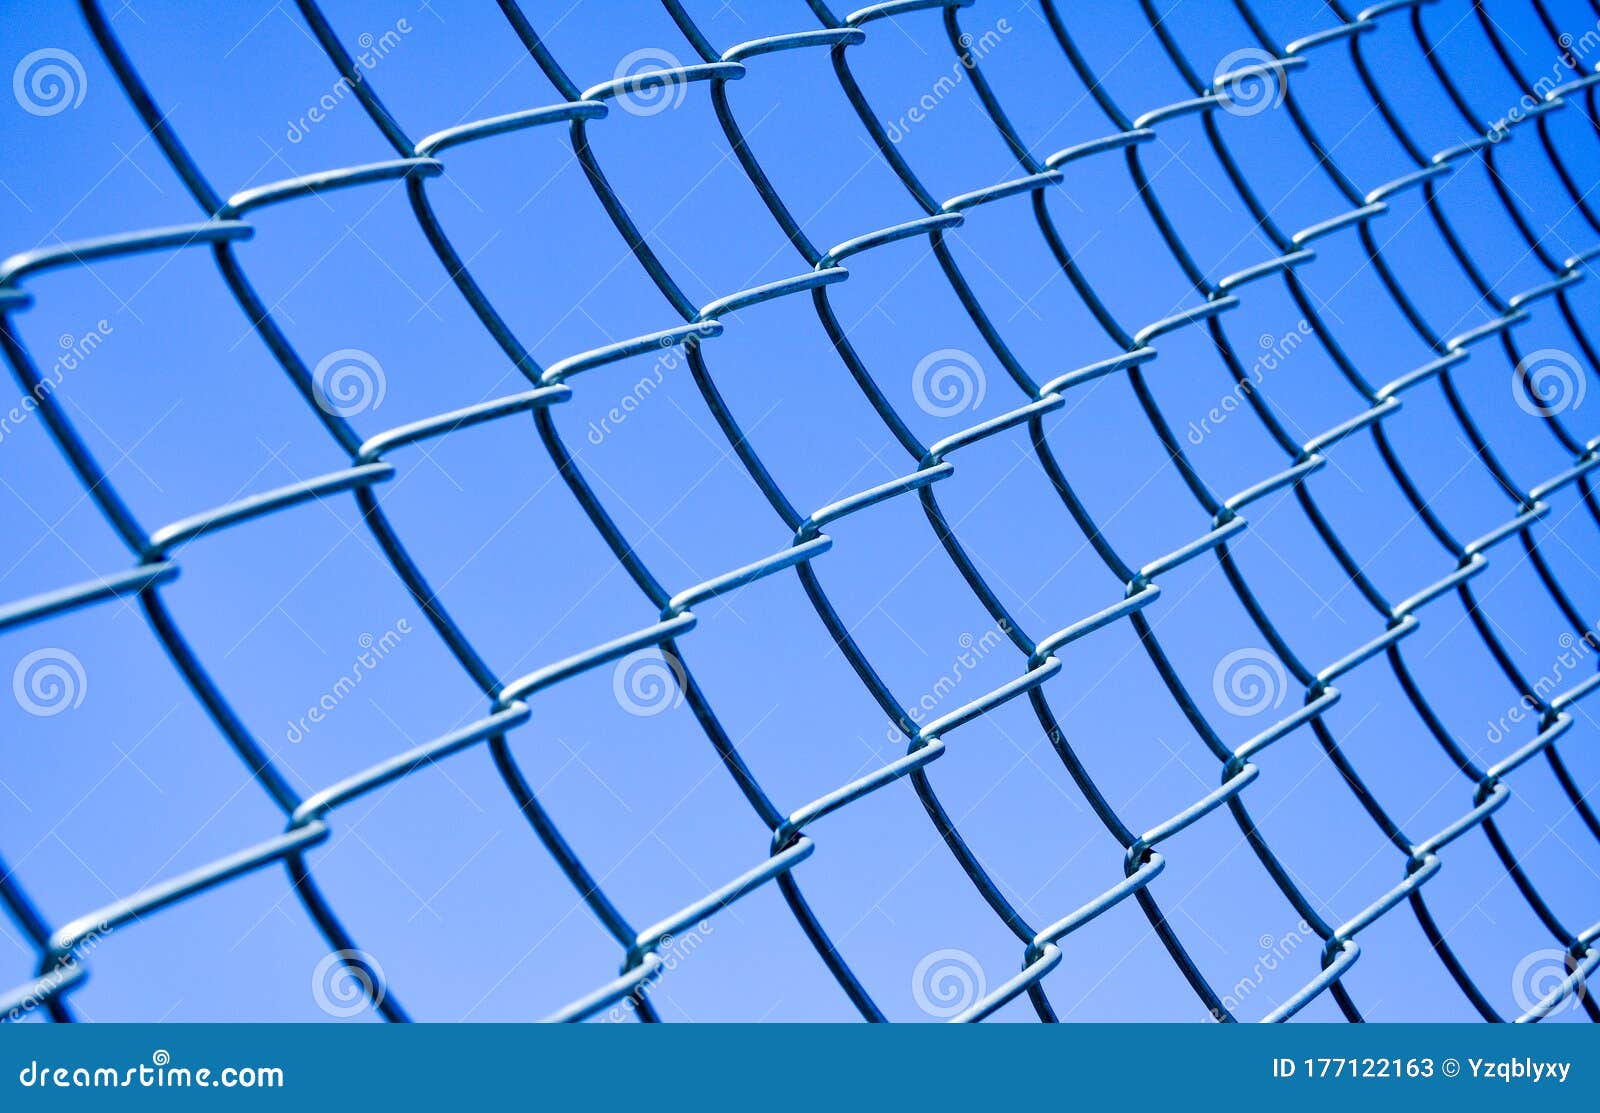 Metal mesh net fence stock image. Image of metallic - 177122163
